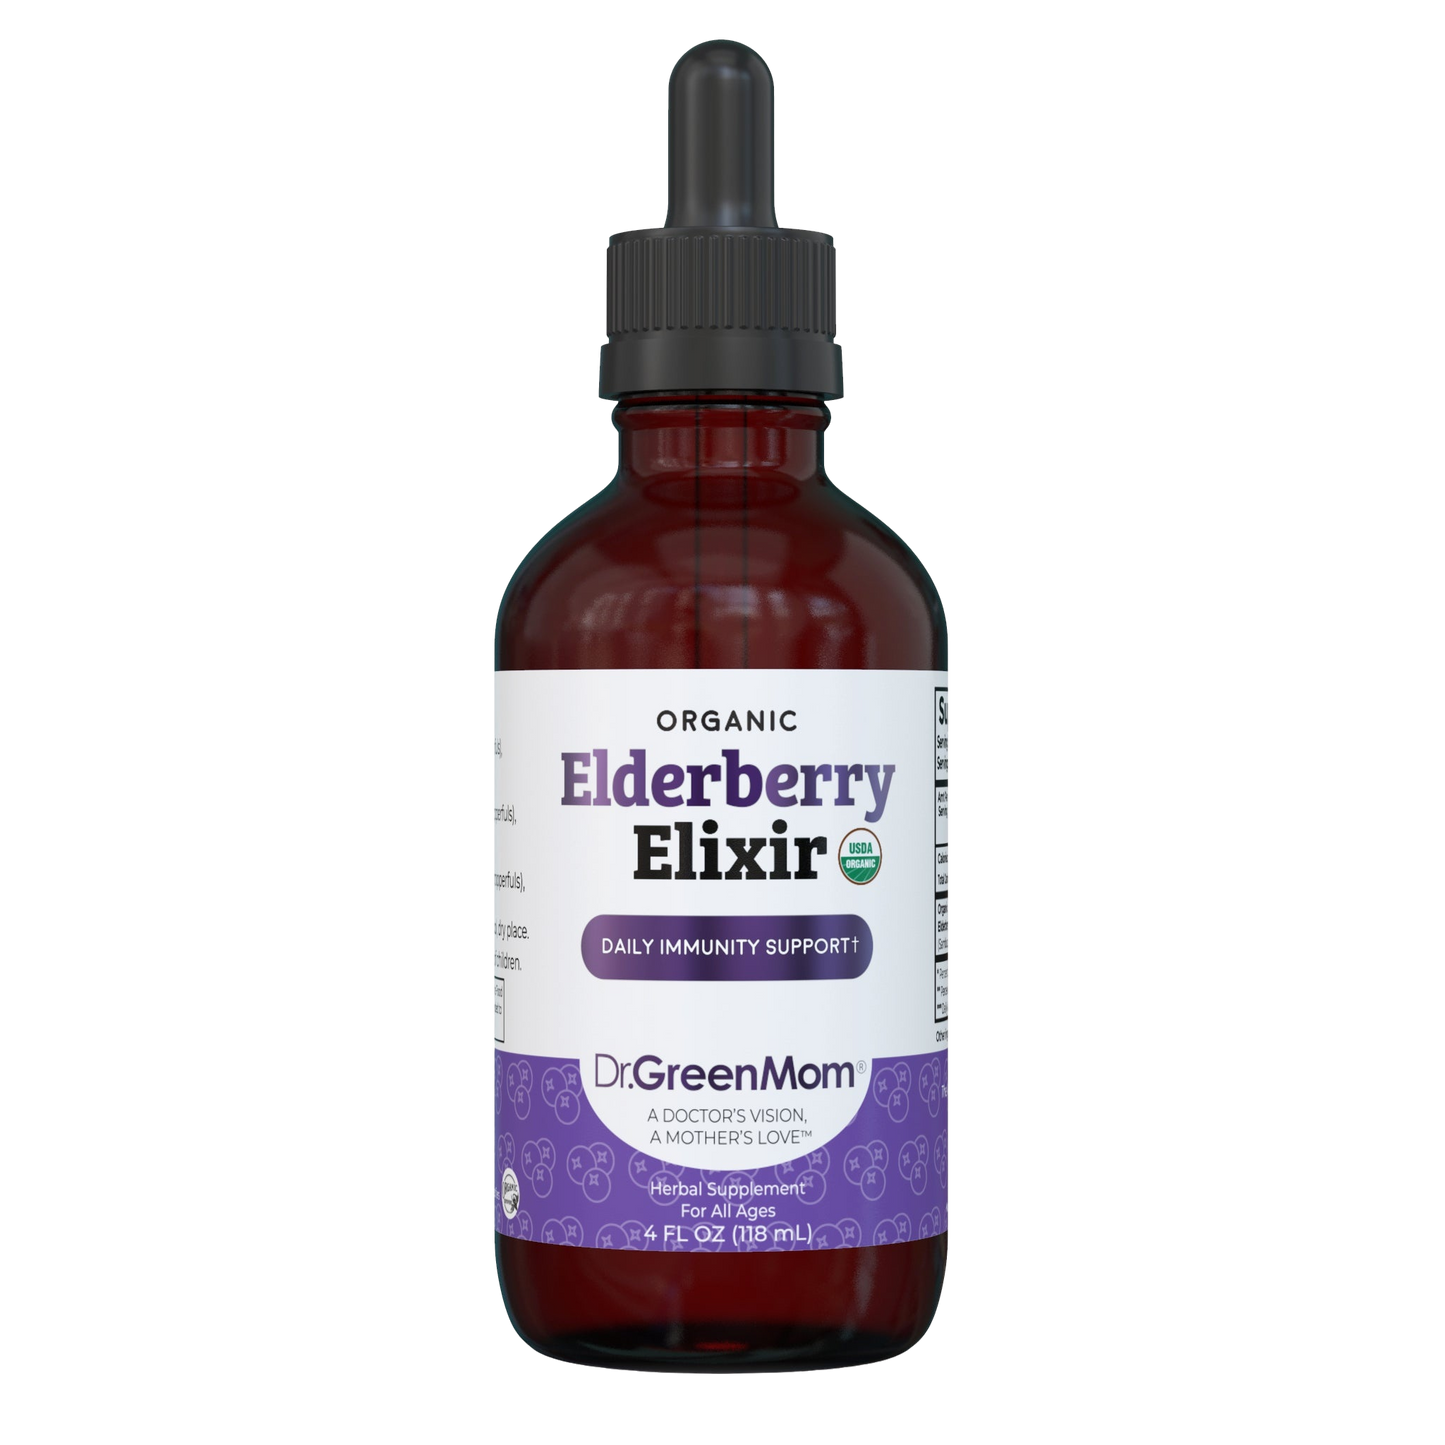 Elderberry Elixir™